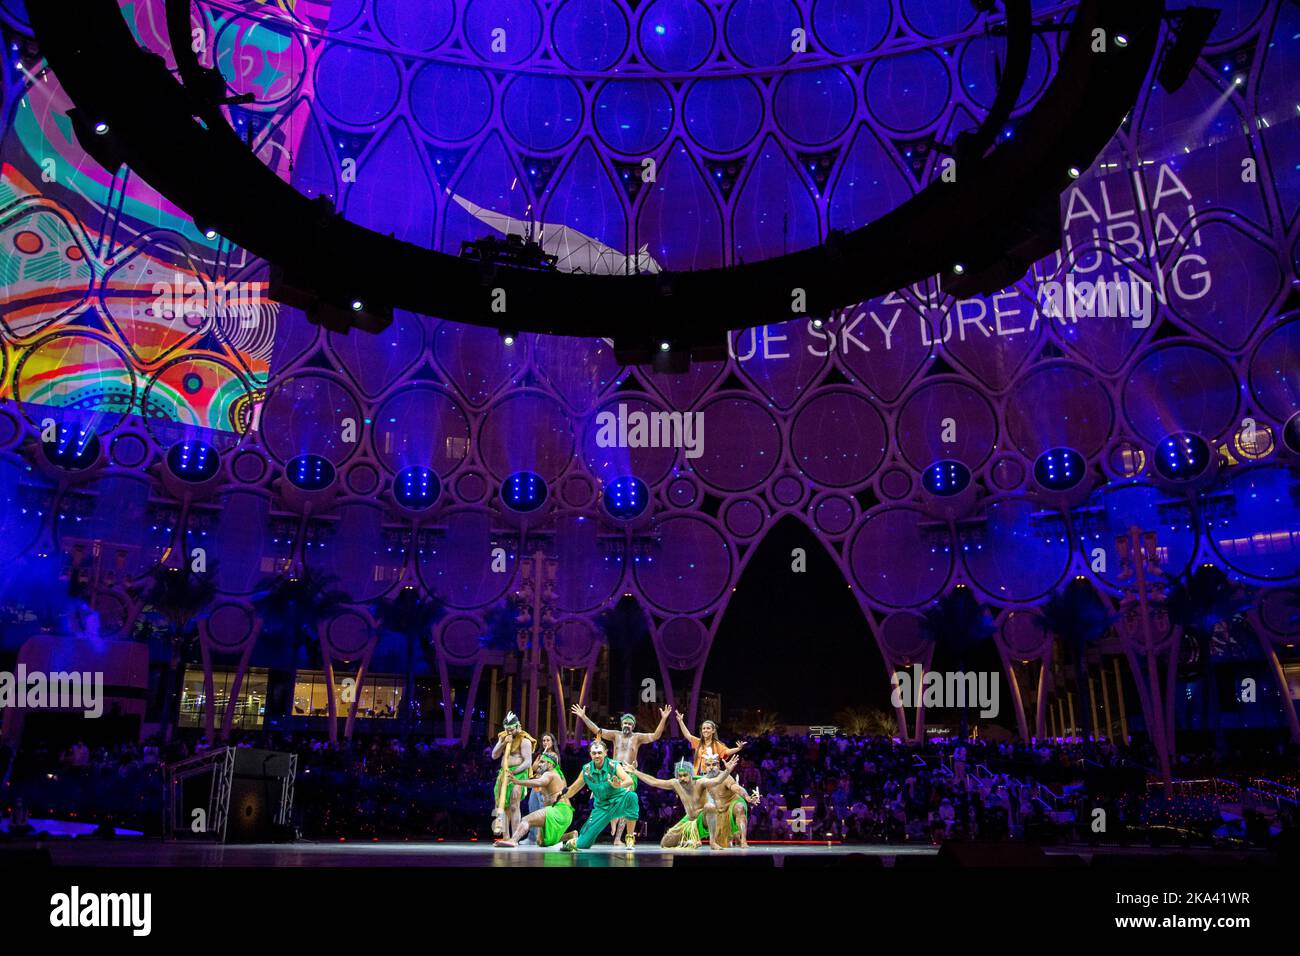 Expo 2020 Al était des danseurs aborigènes du Dome qui se produisent en basse lumière avec du grain et hors foyer Banque D'Images